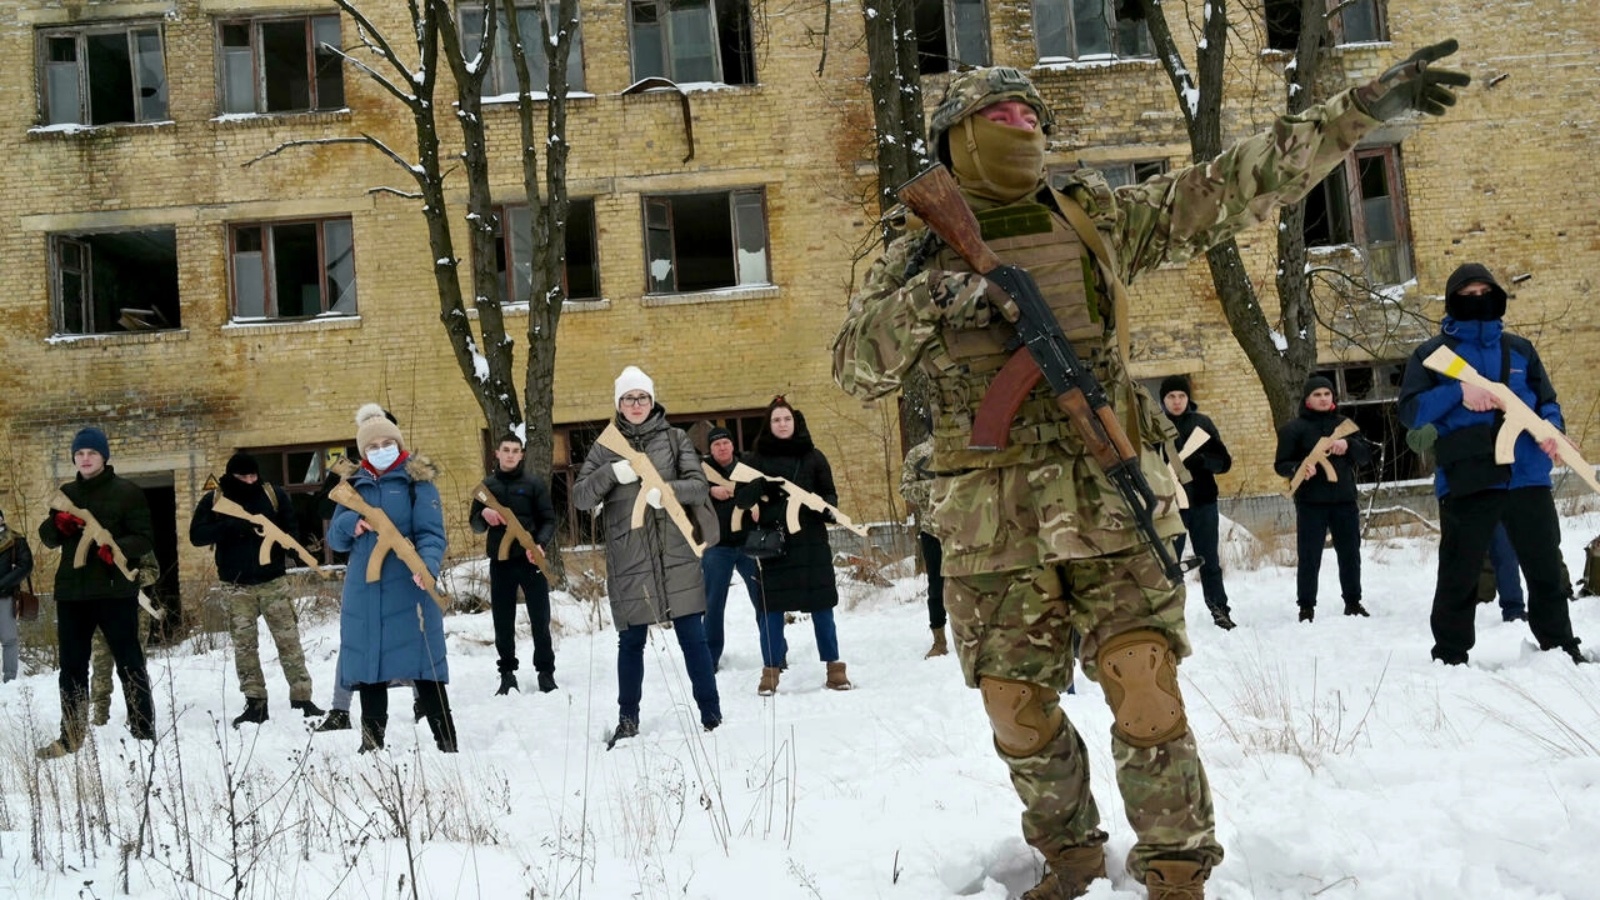 مدرب عسكري يعلم مدنيين كيفية حمل بنادق كلاشينكوف أثناء تدريب في كييف في 30 يناير 2022 